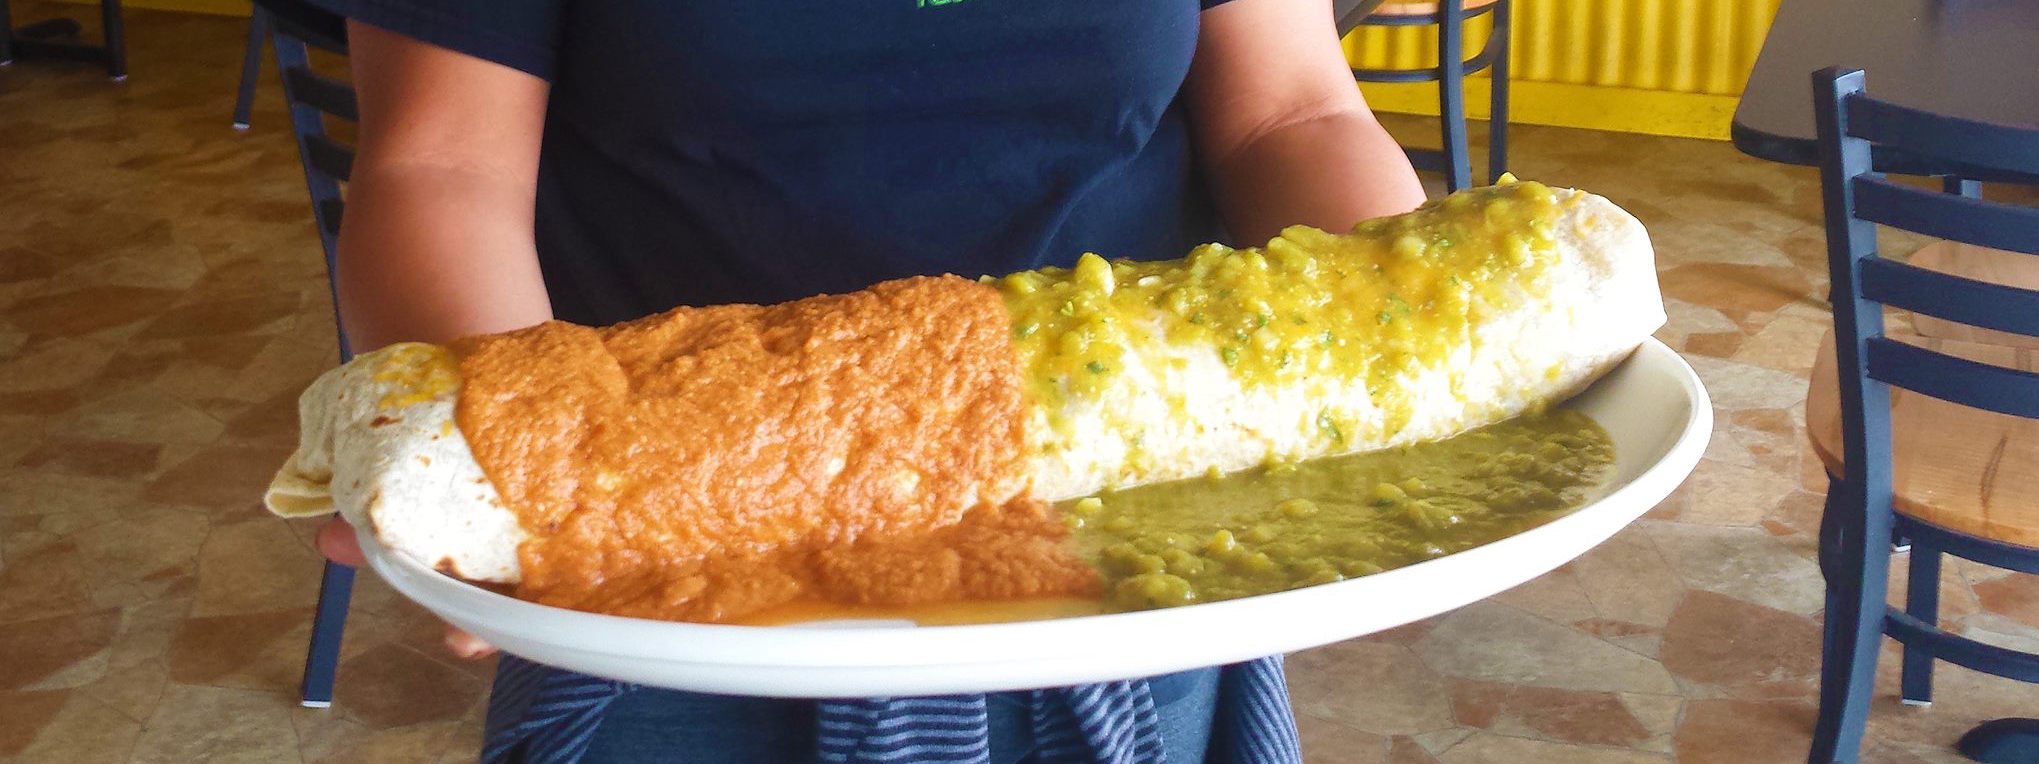 Zobo-Burrito.jpg